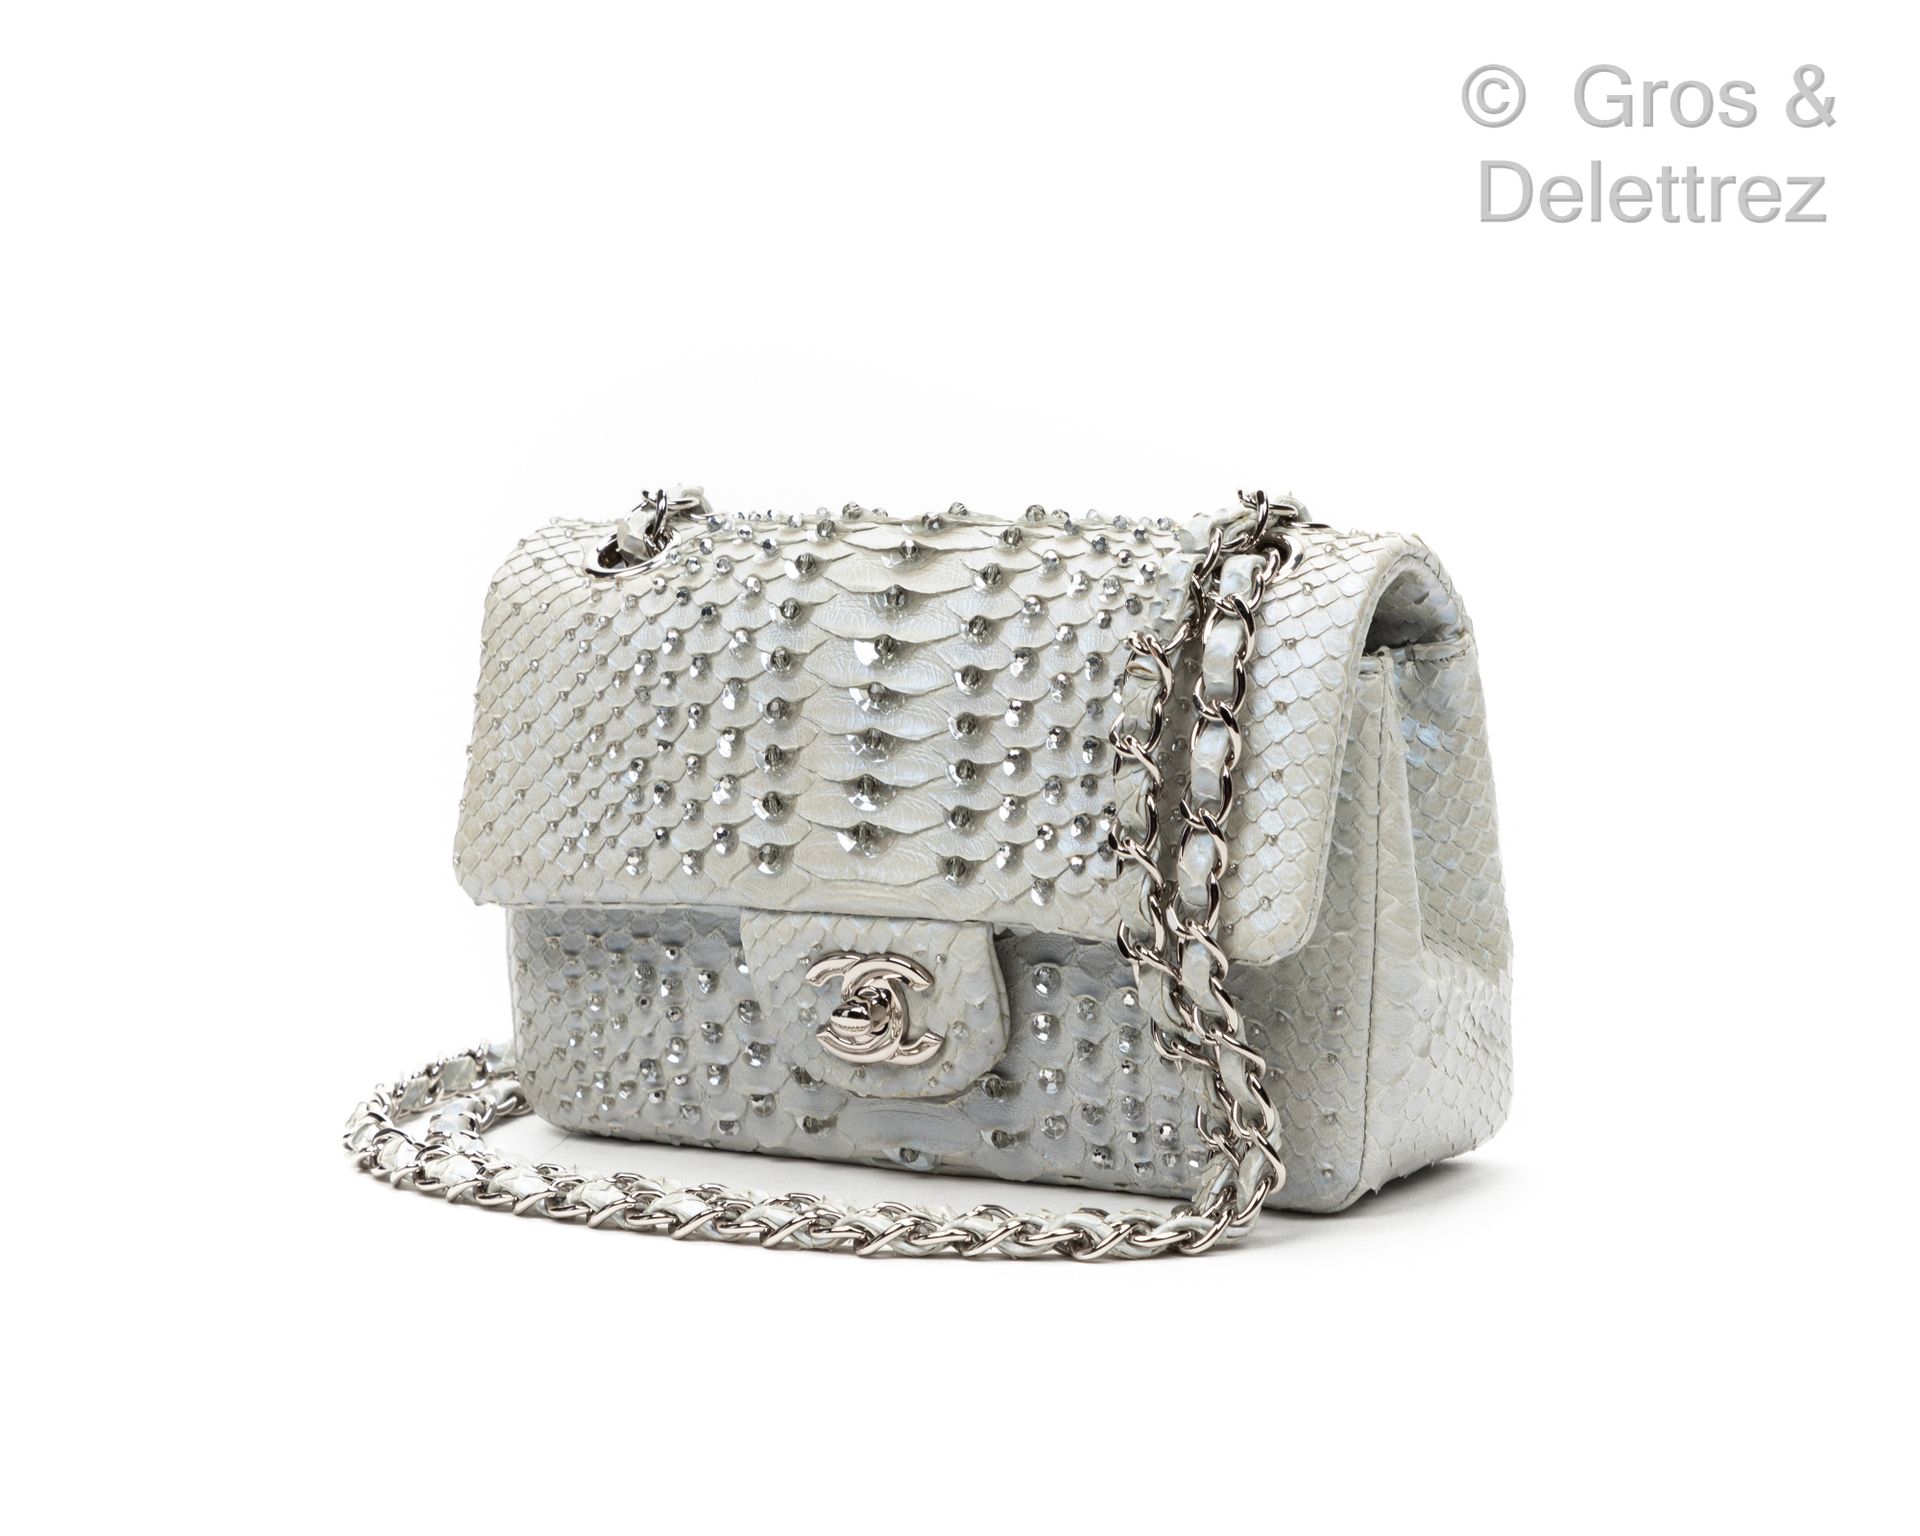 CHANEL Jahr 2012

Tasche "Classic", 20 cm, aus weißem, glänzendem, perlmuttfarbe&hellip;